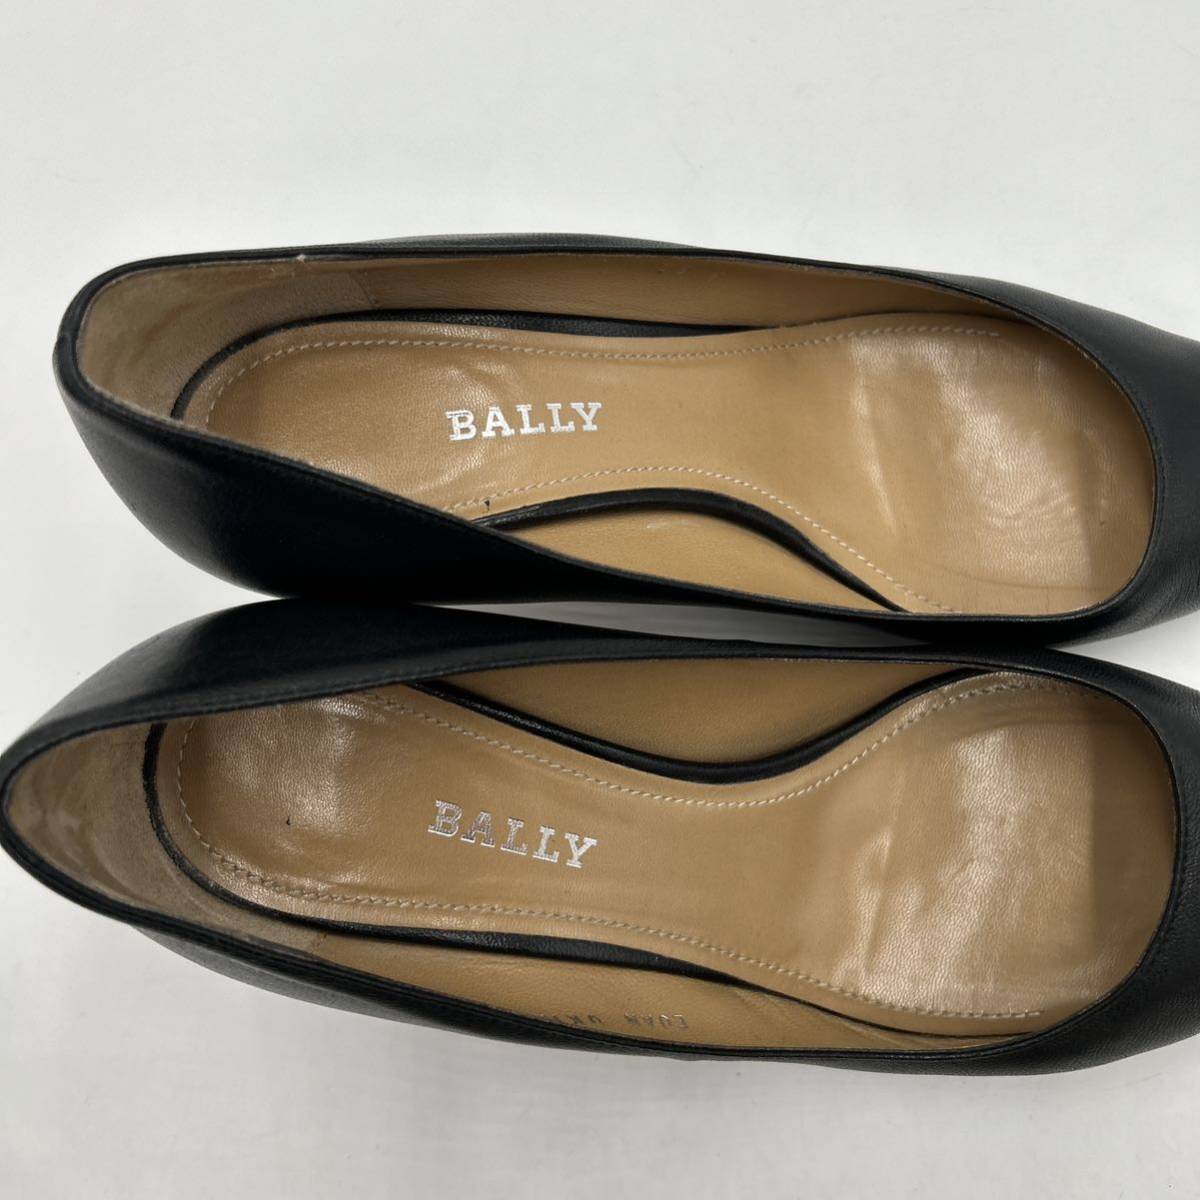 E @ イタリア製 '高級ラグジュアリー靴' BALLY バリー 本革 LEATHER ヒール パンプス EU36 22.5cm レディース 婦人靴 シューズ BLACK _画像7